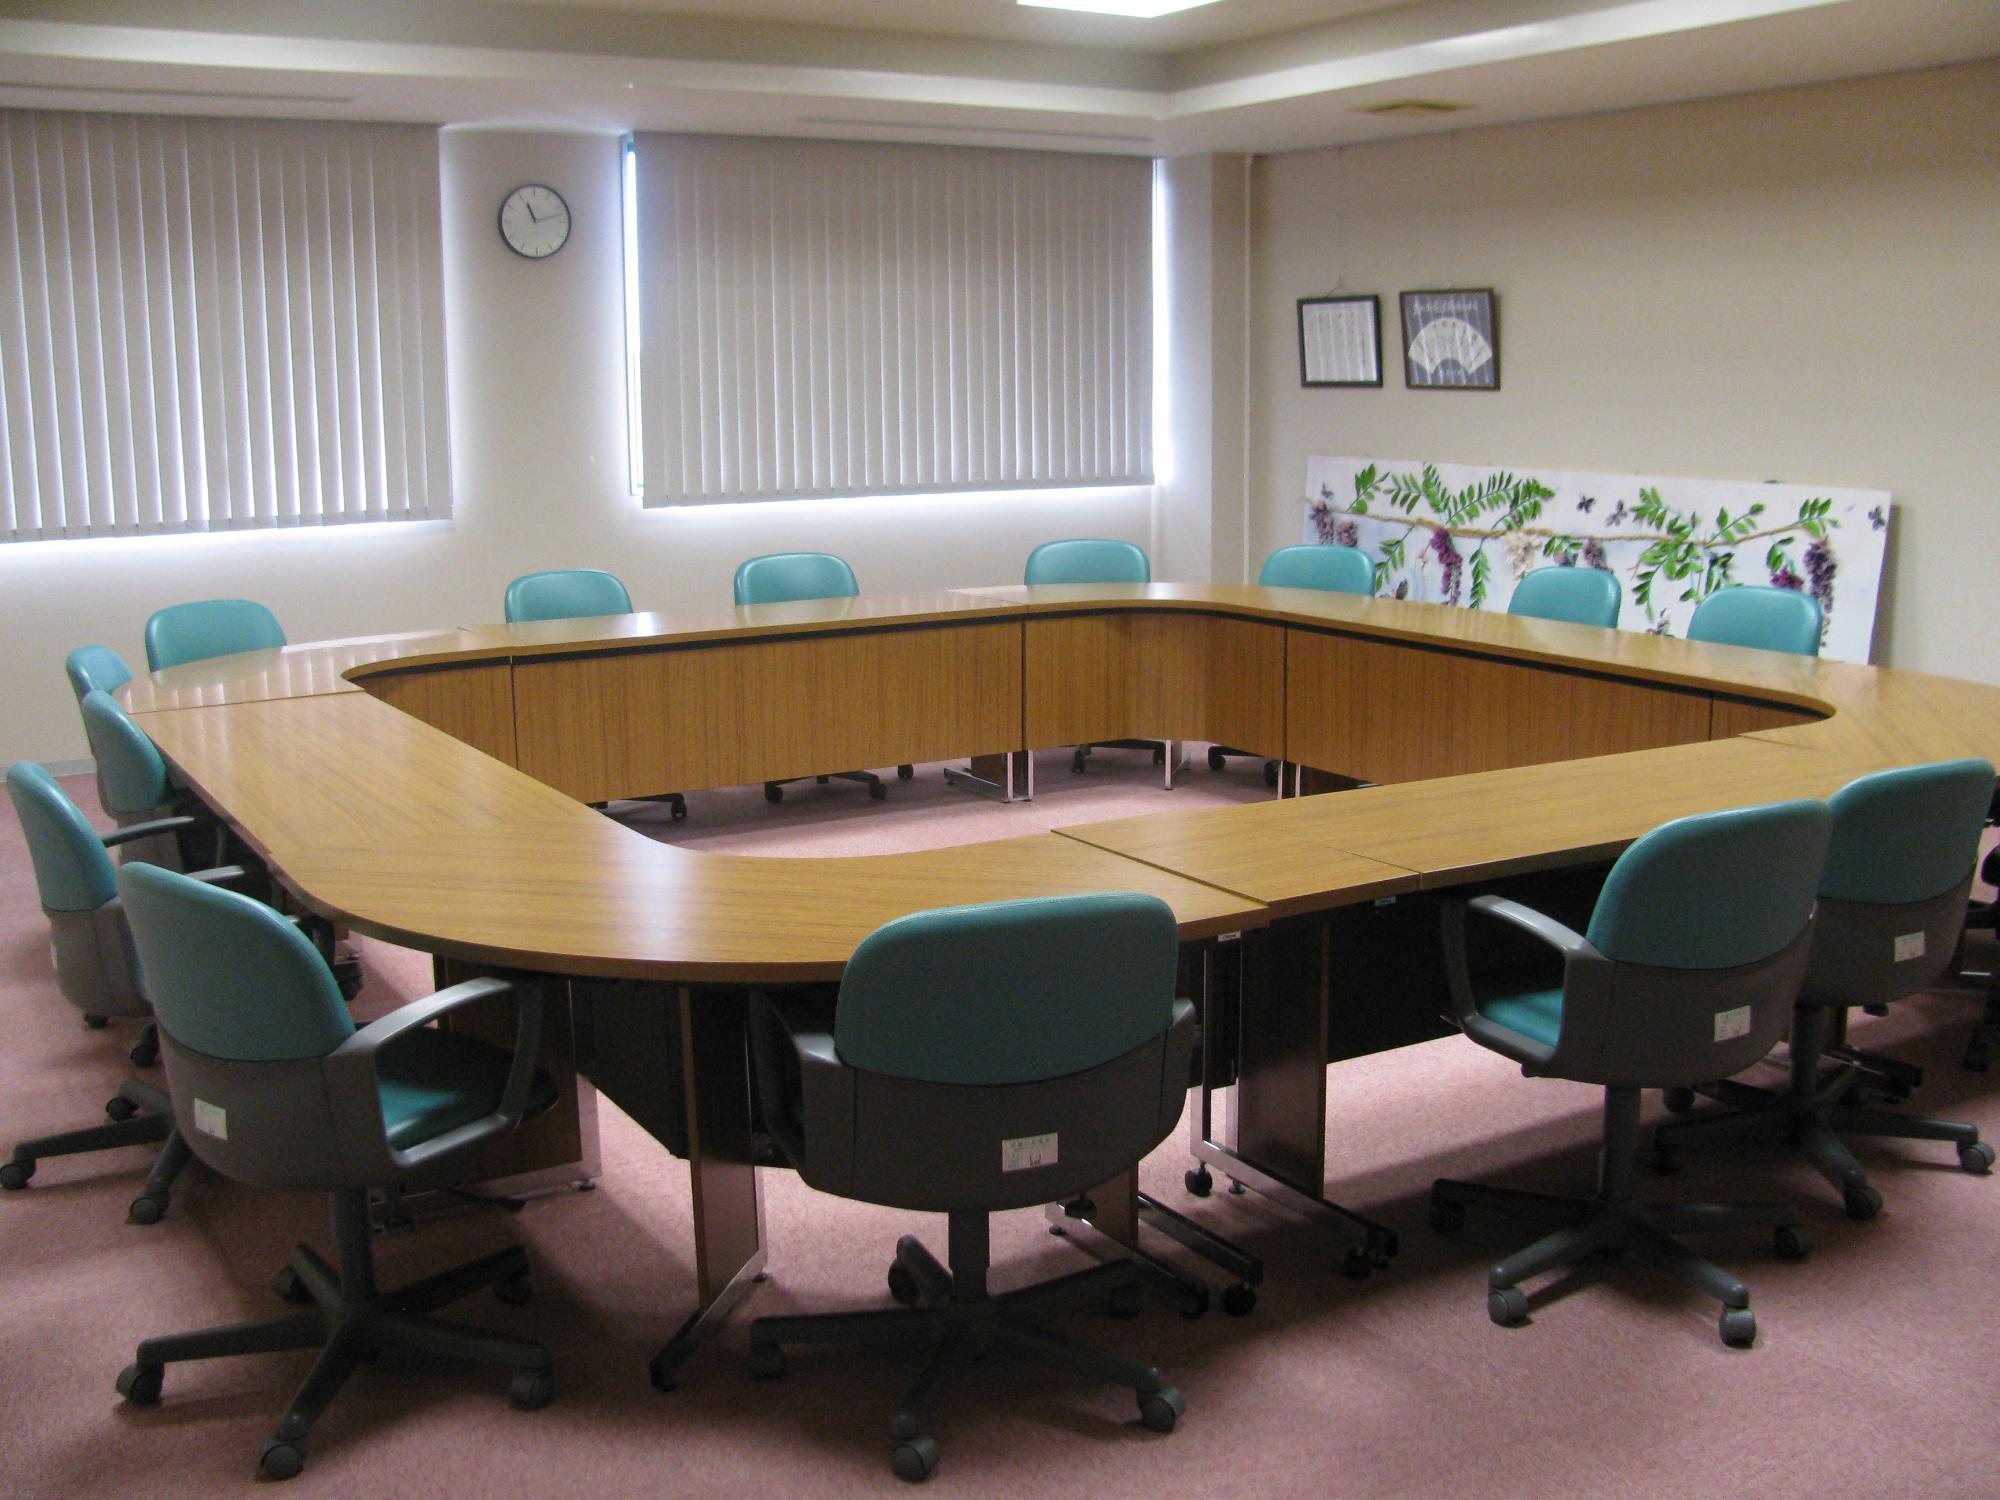 ロの字に配置された机に緑色の椅子が設置された会議室の写真